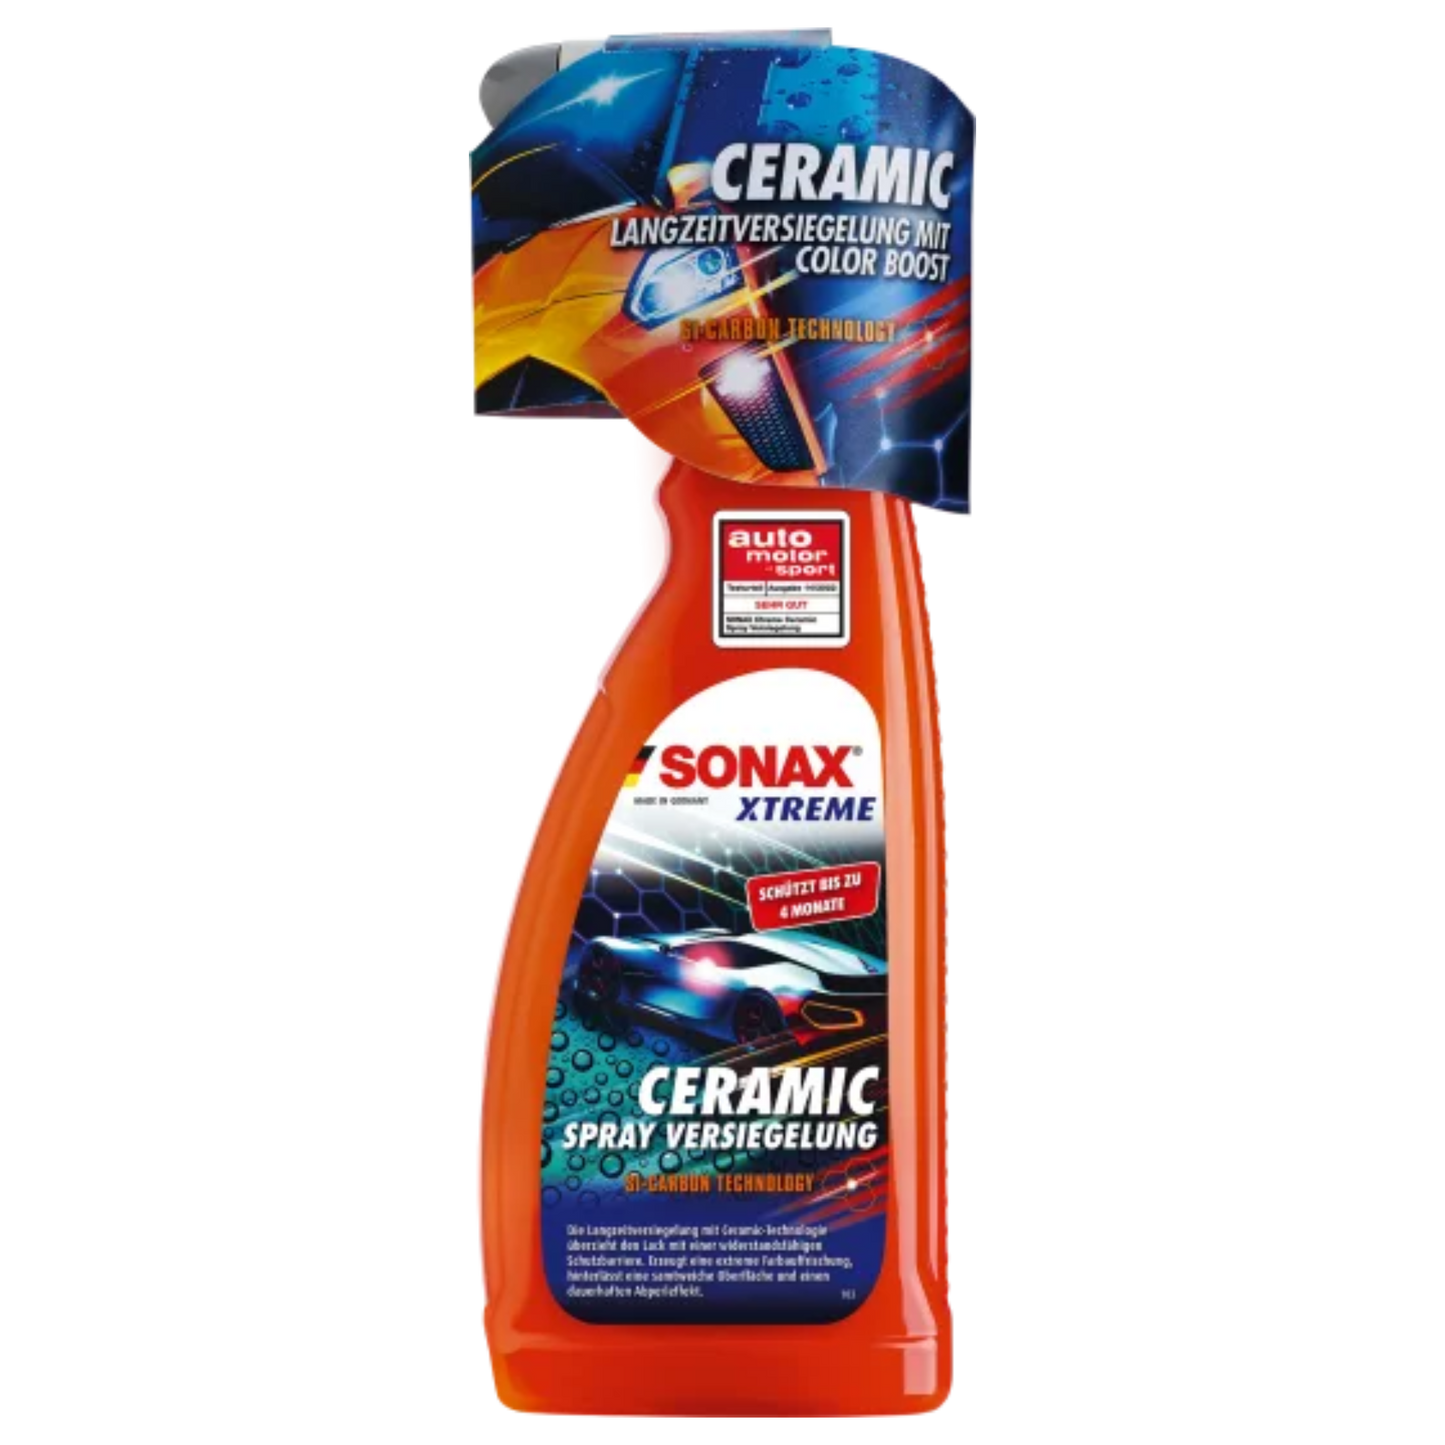 SONAX XTREME Ceramic Spray Versiegelung, 750ml